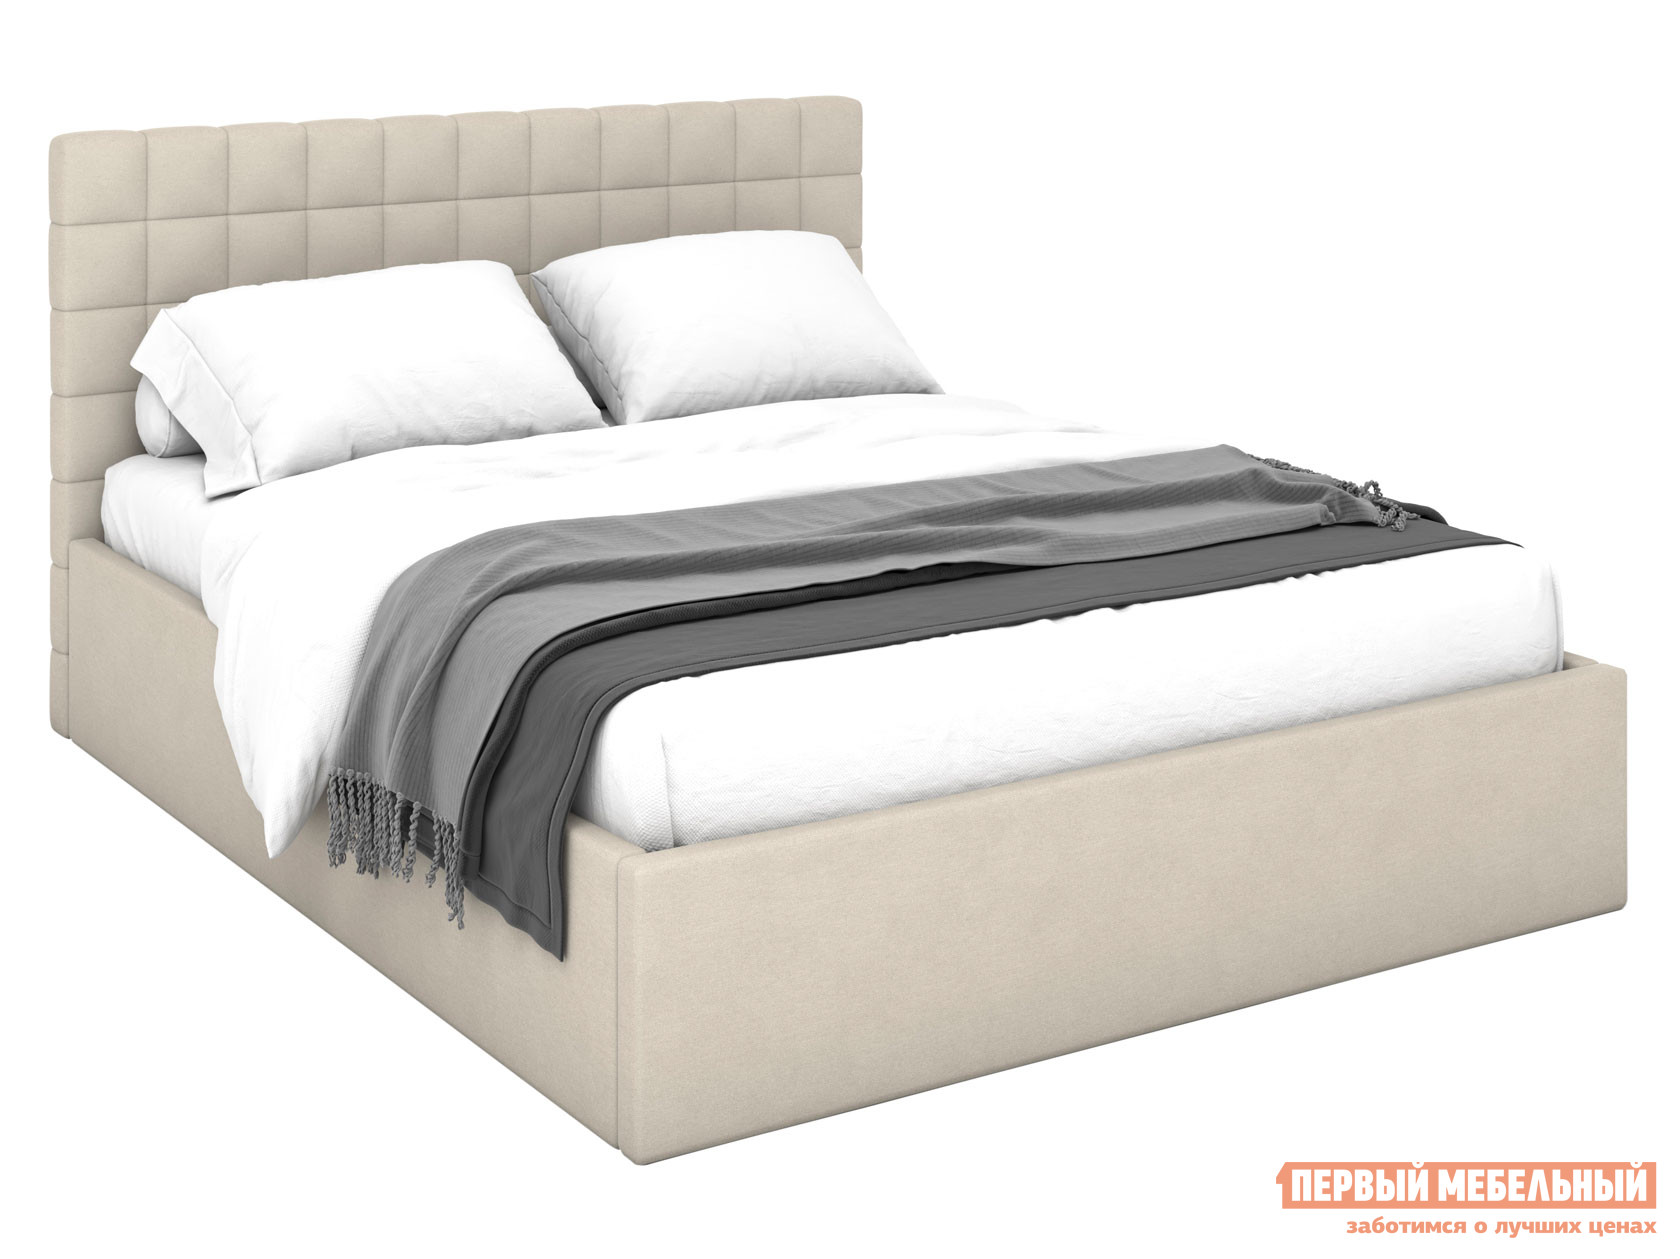 Двуспальная кровать  Дени Кремовый, микрошенилл, 160х200 см, С подъемным механизмом